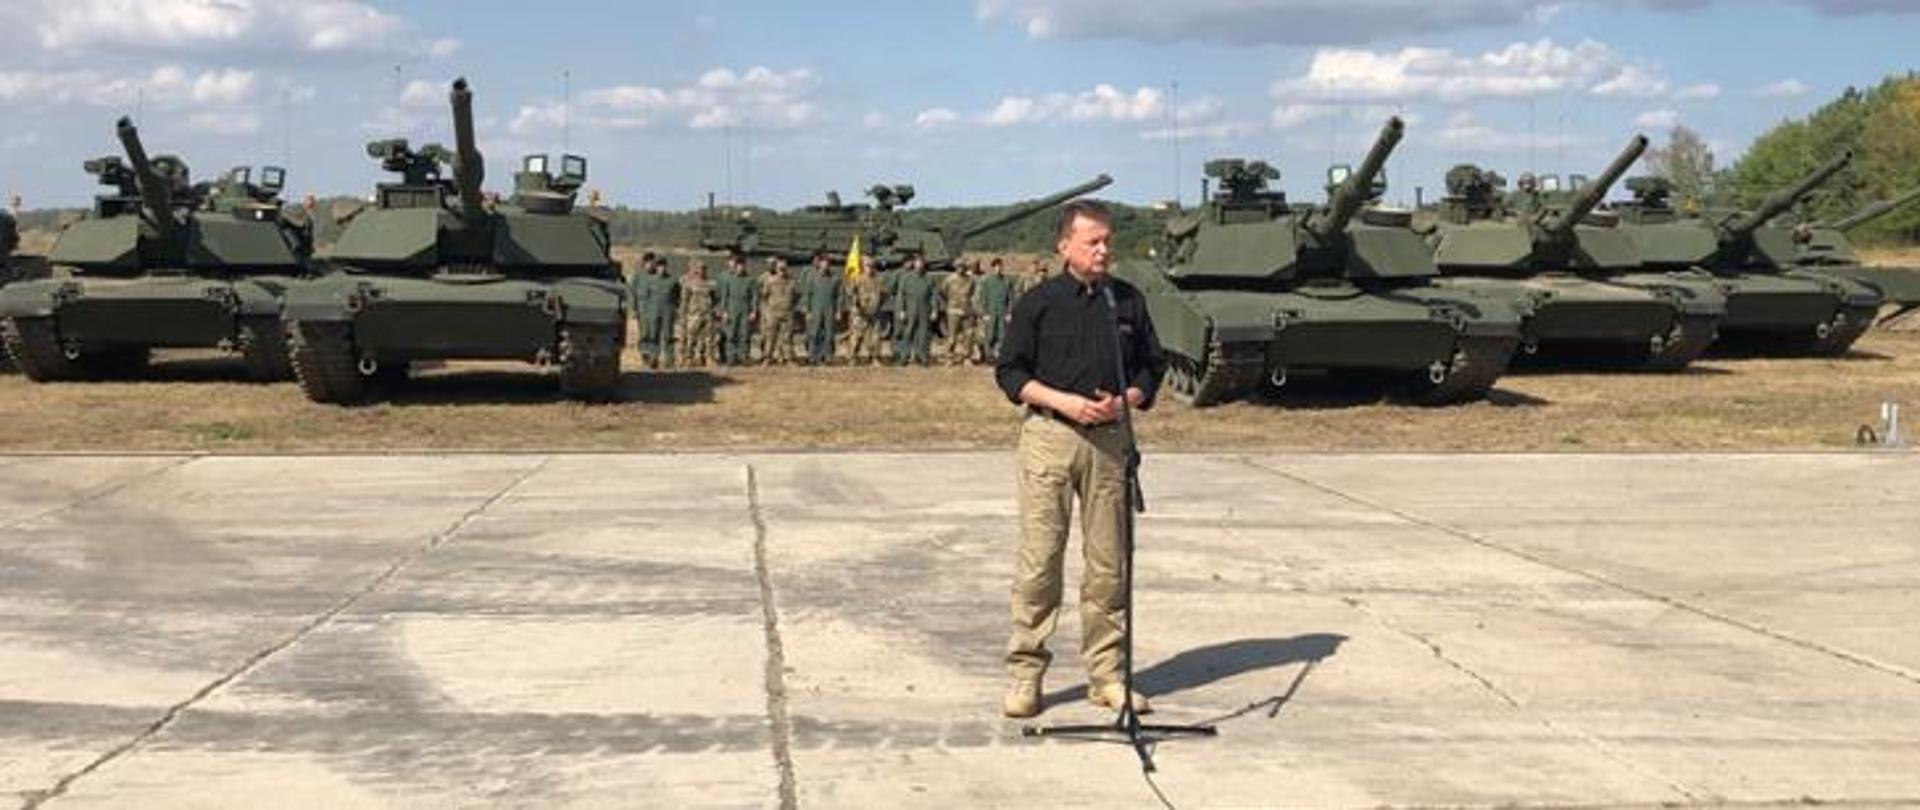 Polish soldiers are training on Abrams tanks_zajawka